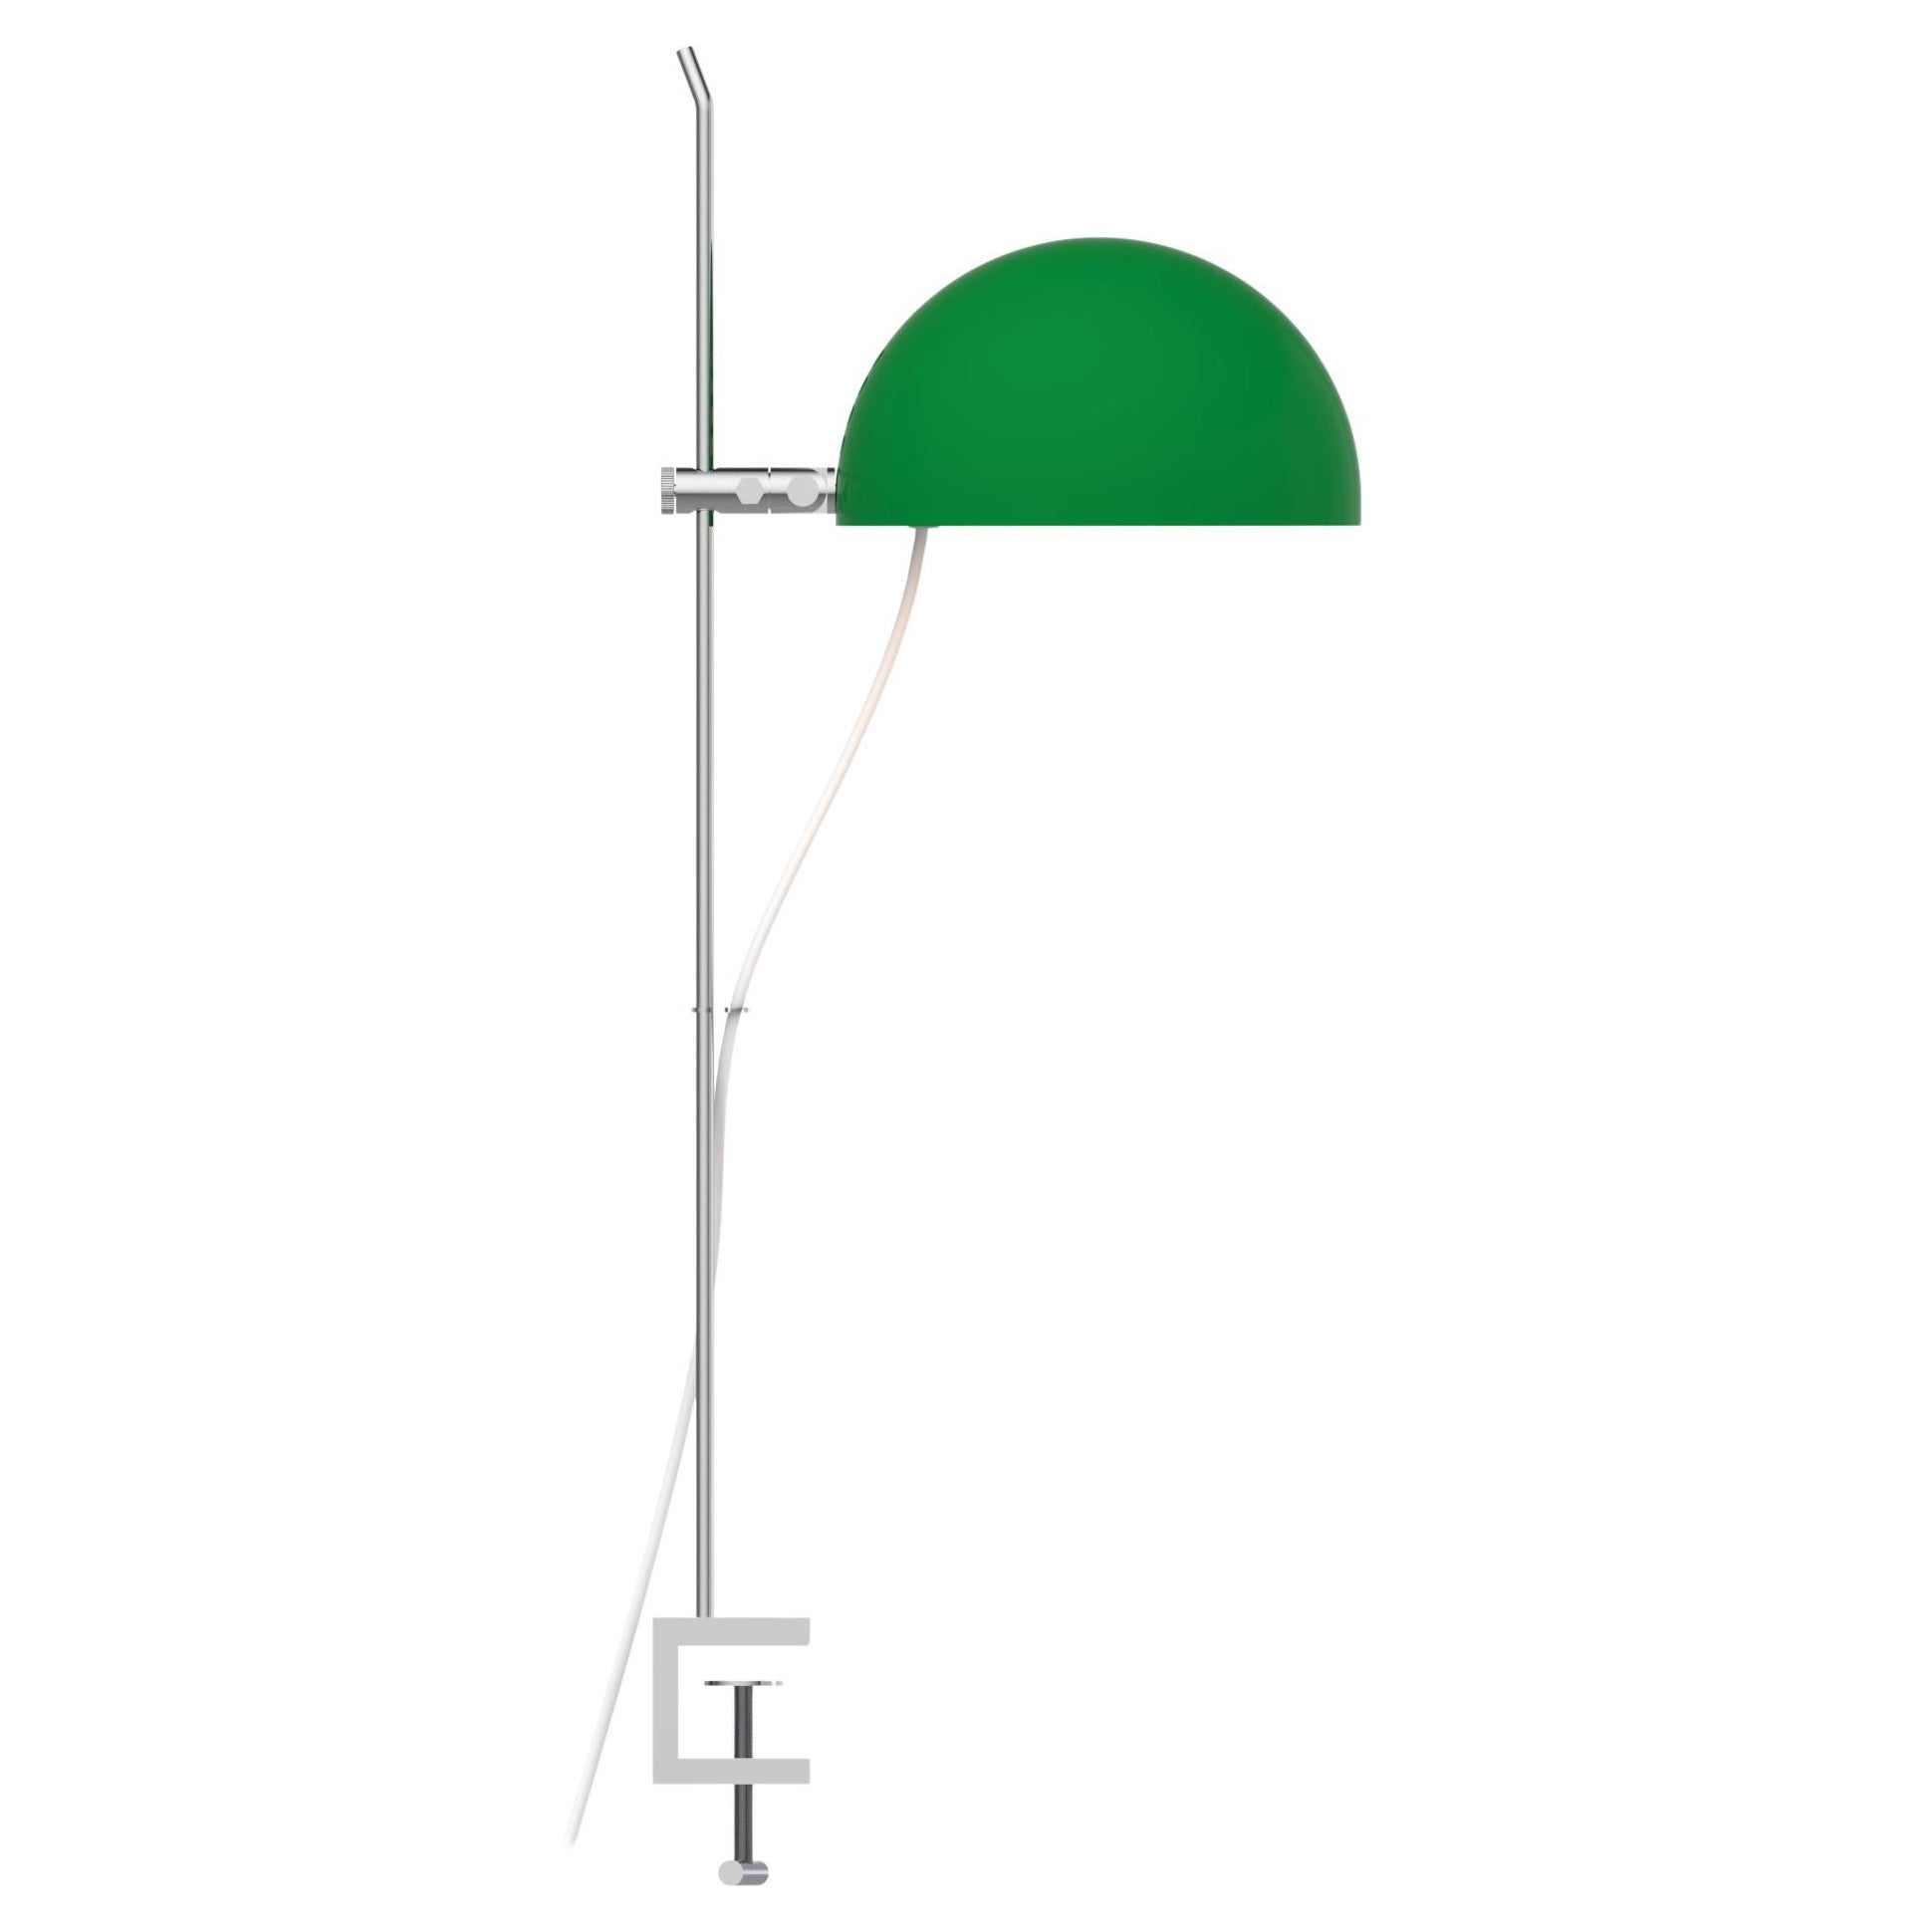 Alain Richard 'A22F' Task Lamp in Green for Disderot For Sale